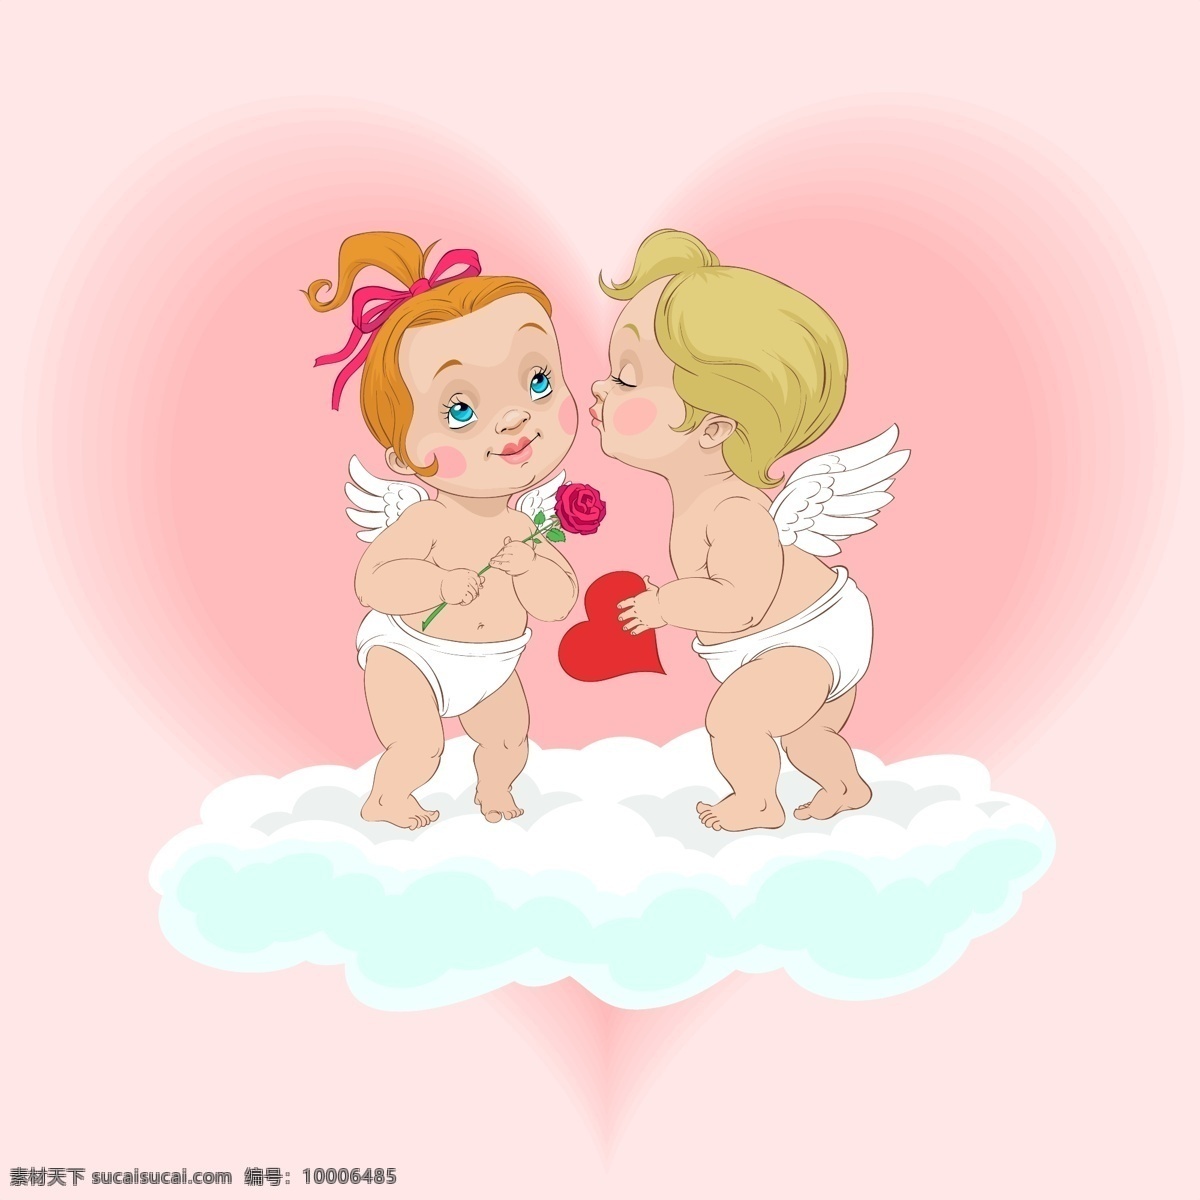 可爱的 天使 小天使 可爱的小 小 自由 可爱 矢量 可爱的小天使 向量 魔鬼 插画 卡通 矢量图 其他矢量图